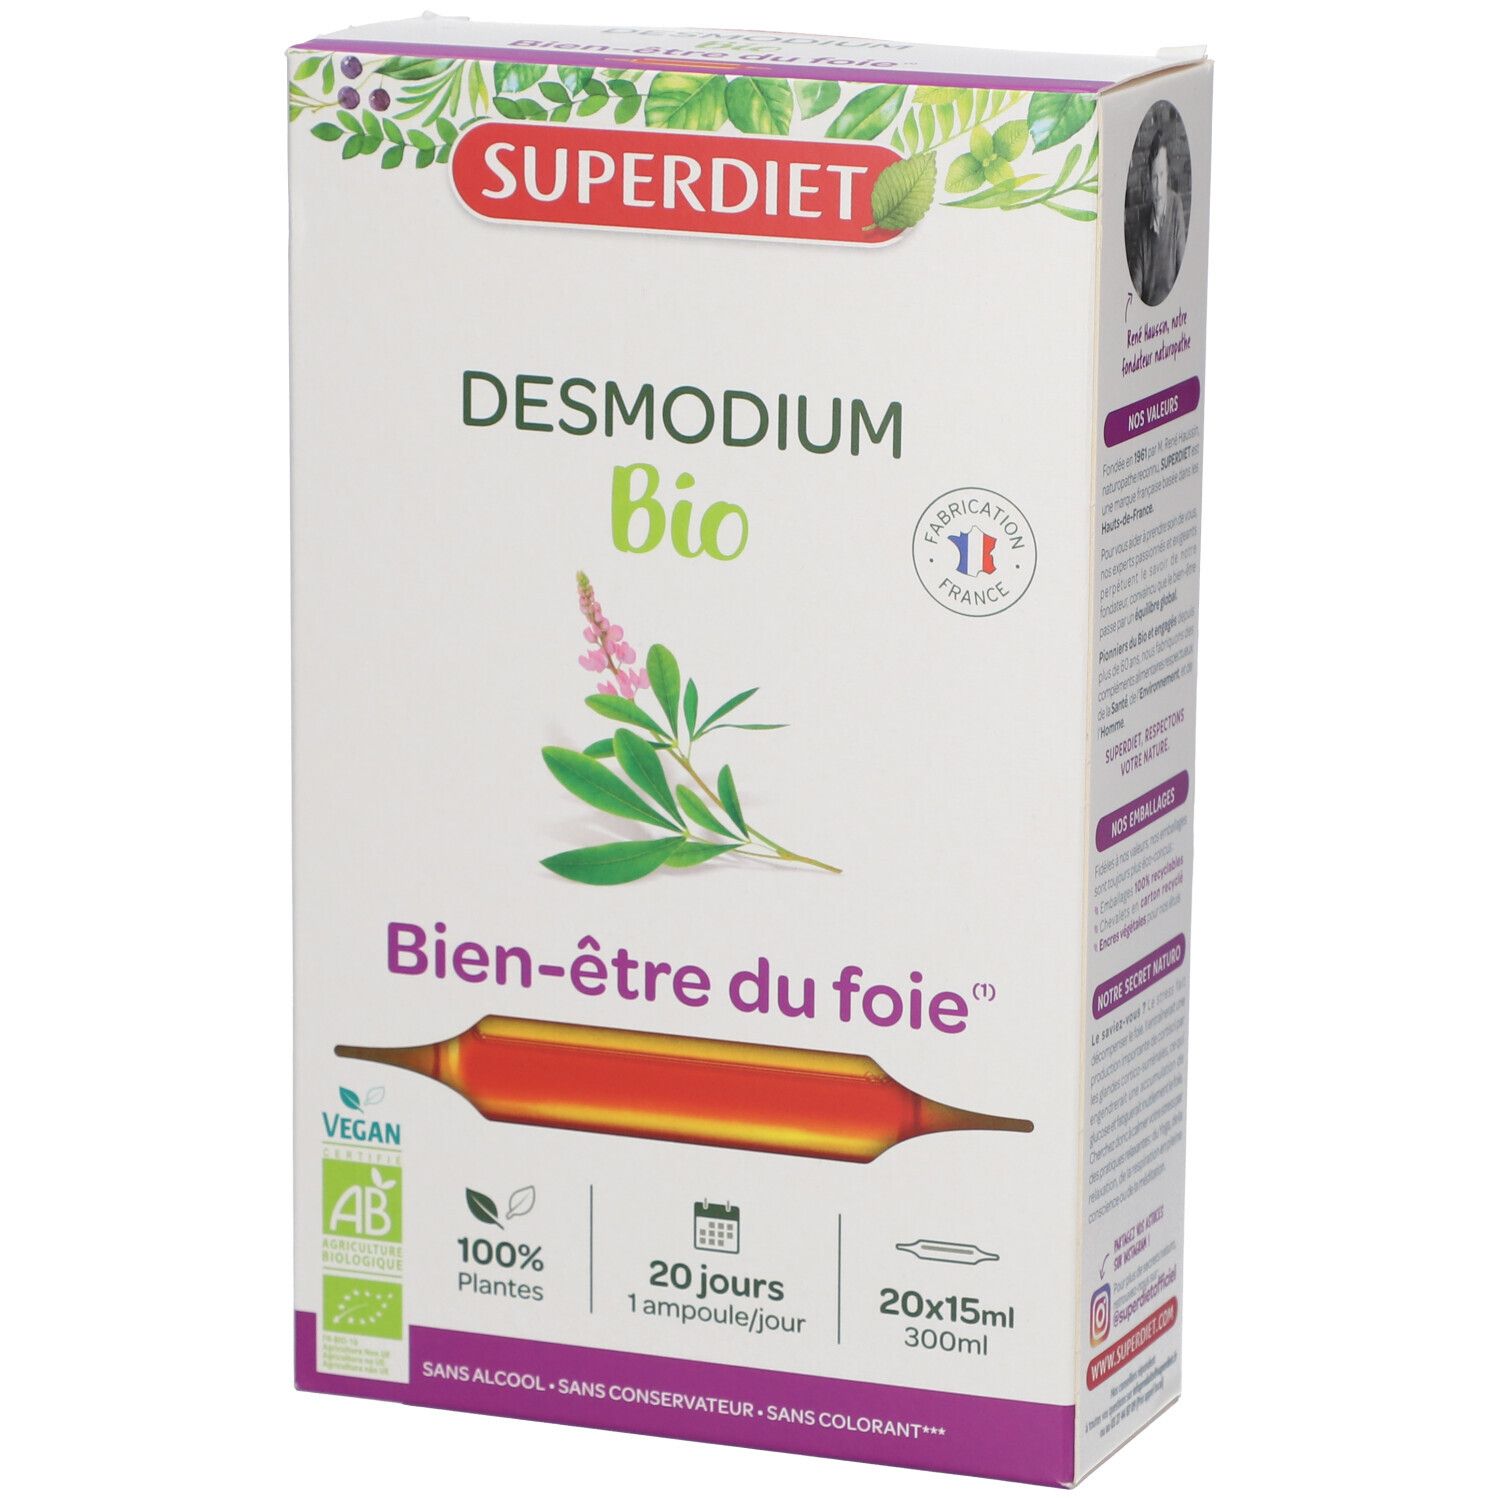 Super Diet Desmodium bio